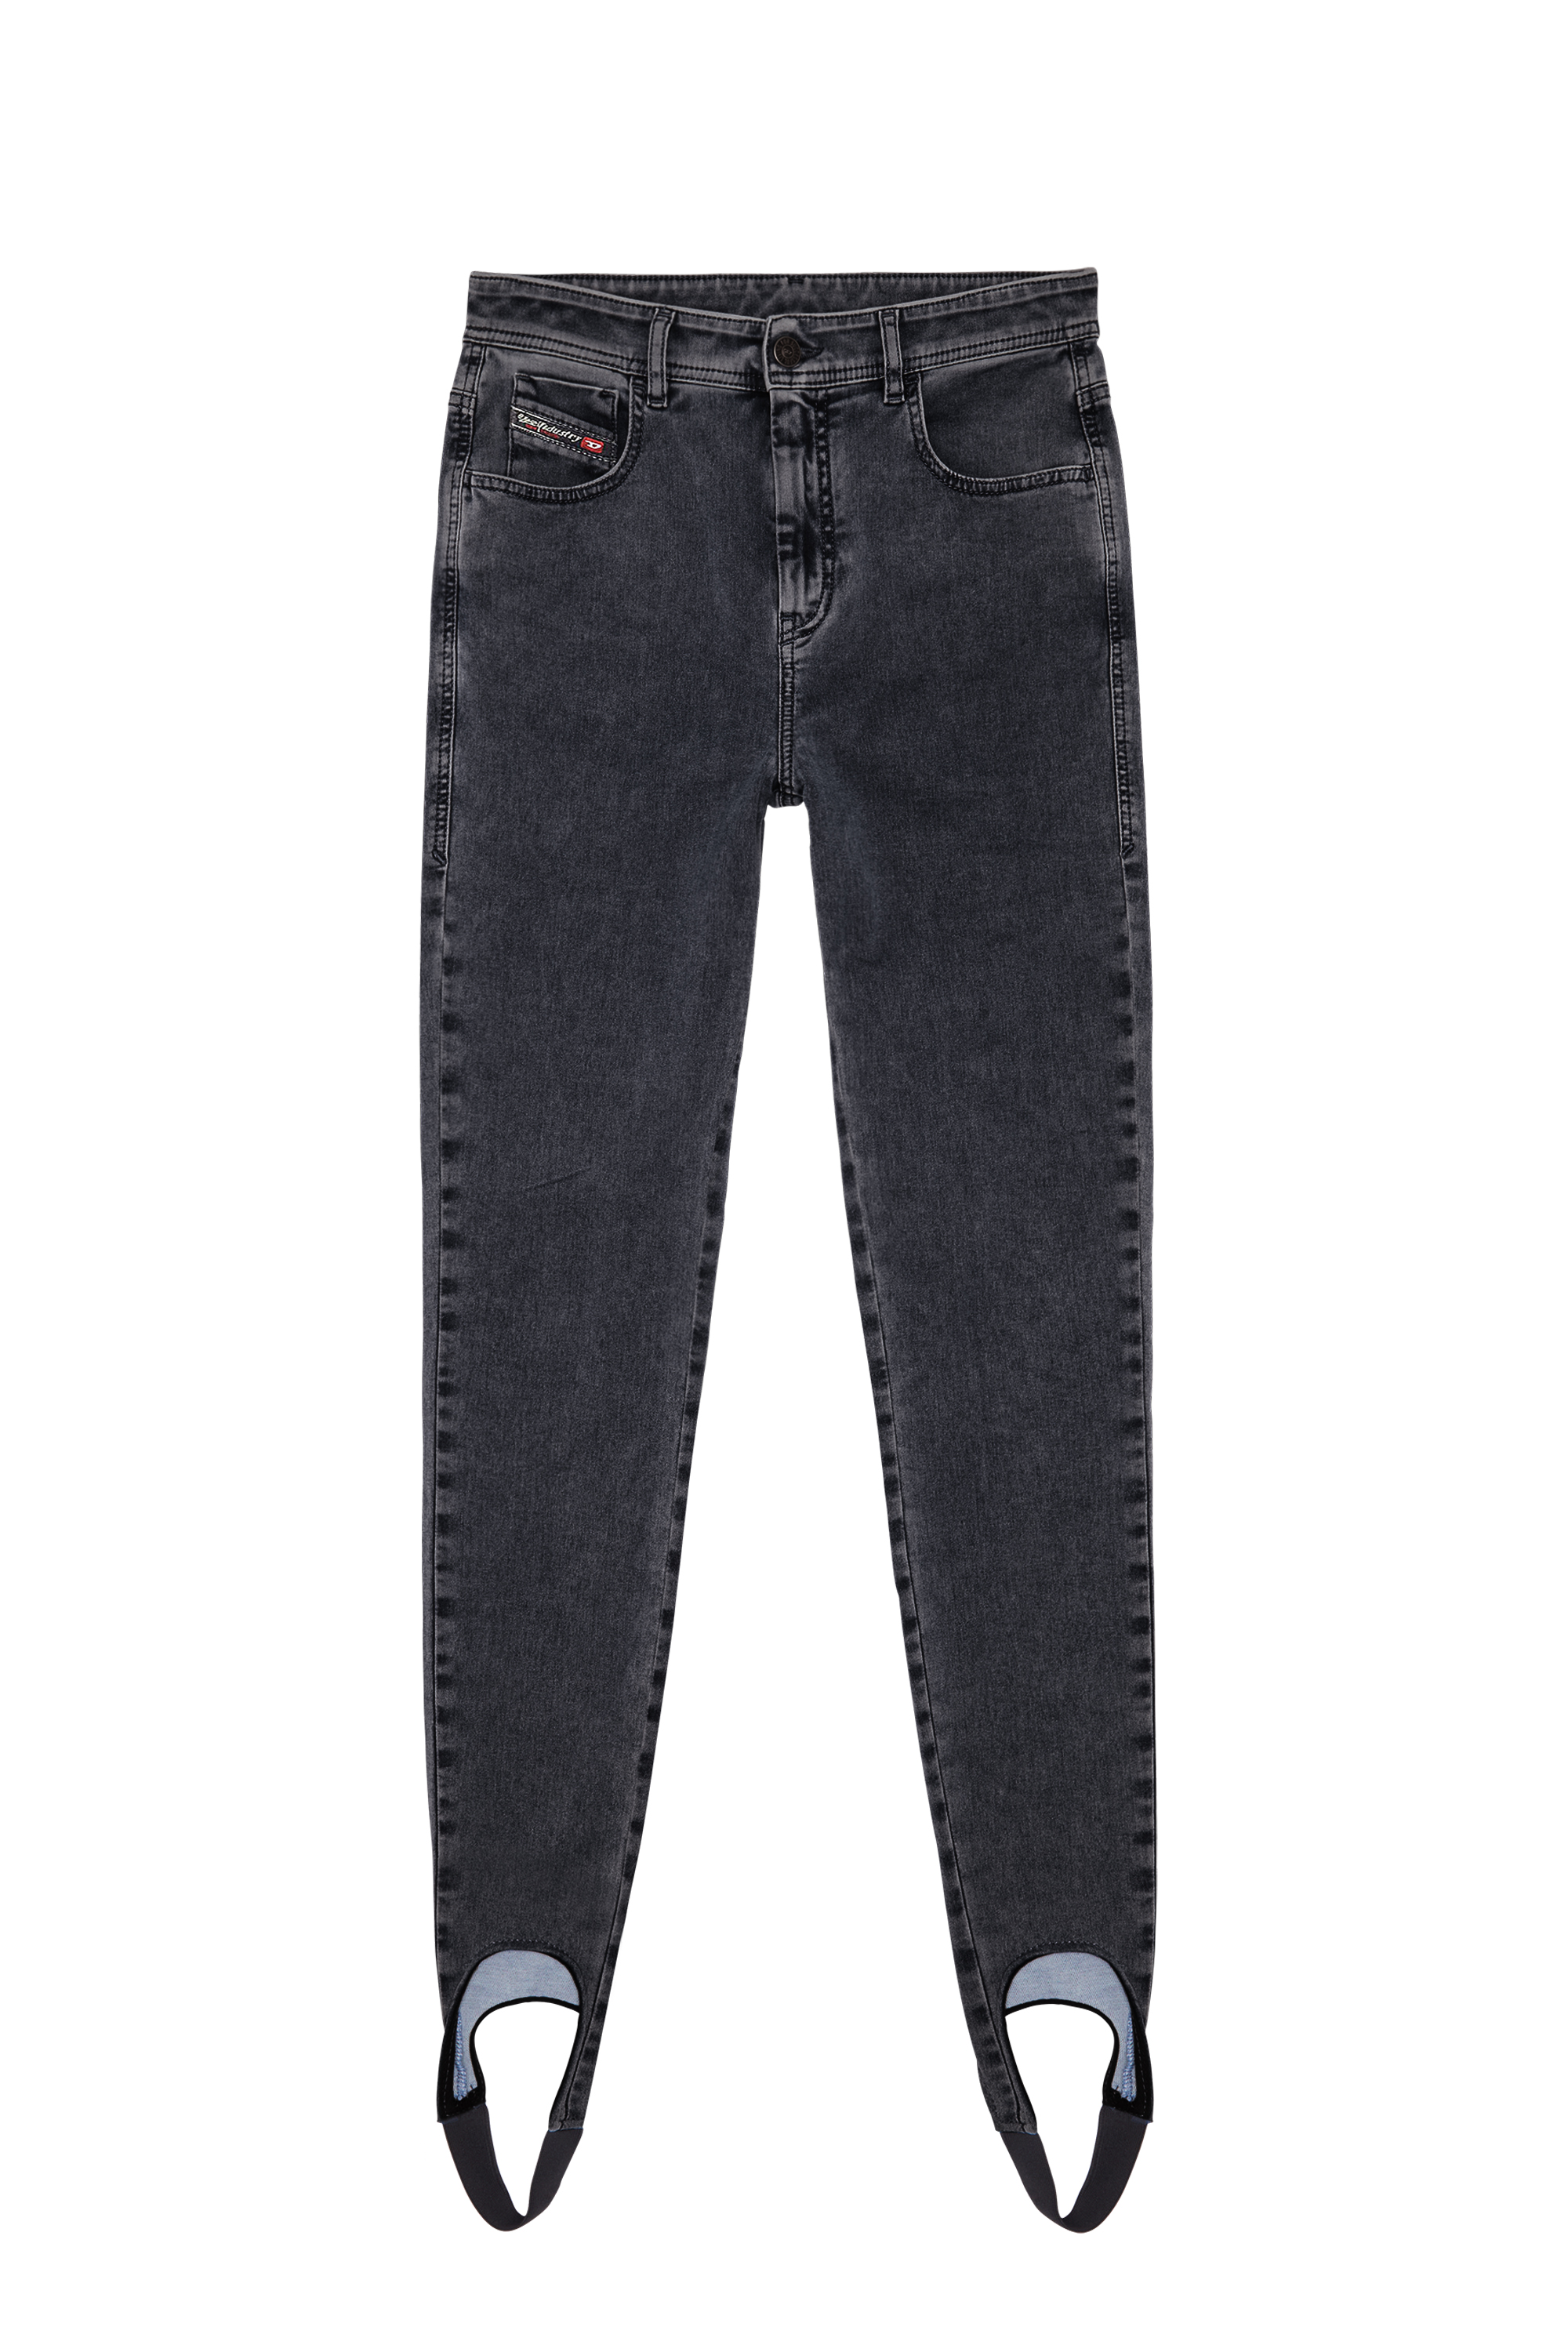 Slandy Joggjeans® 069ZM Super skinny, Black/Dark grey - Jeans